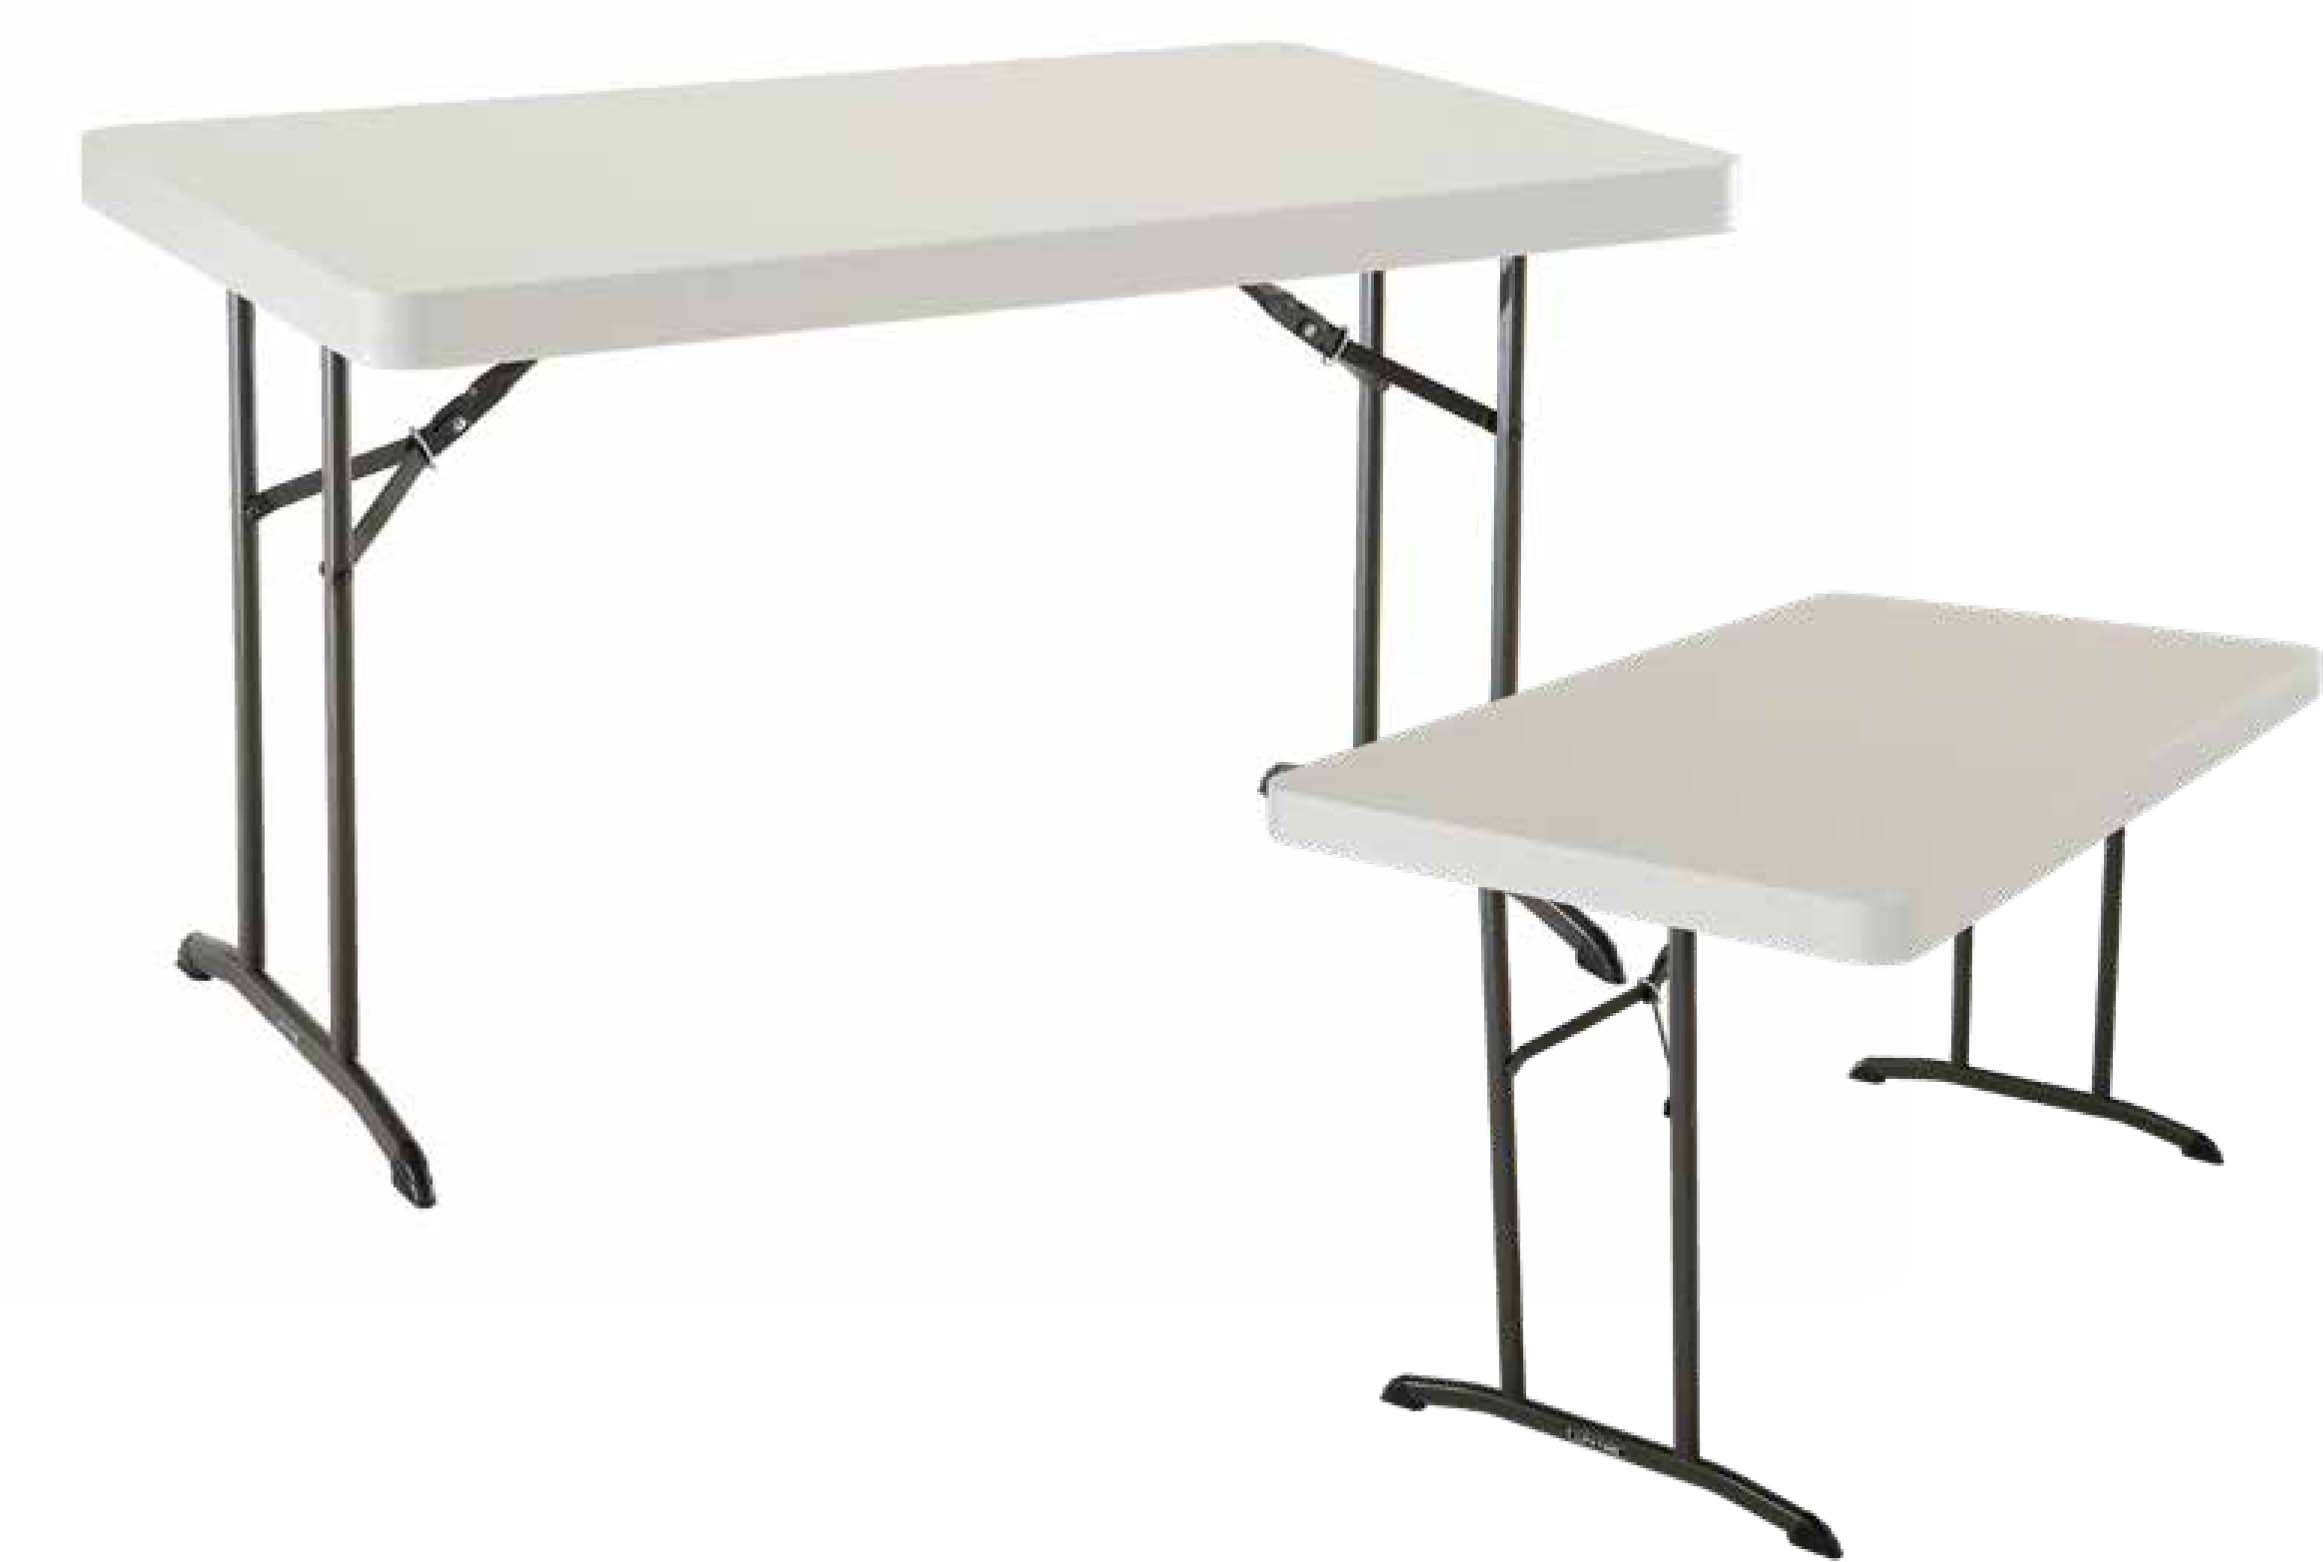 Table rectangulaire LIFETIME 183x76cm Noire pliante en 2 - PRODES